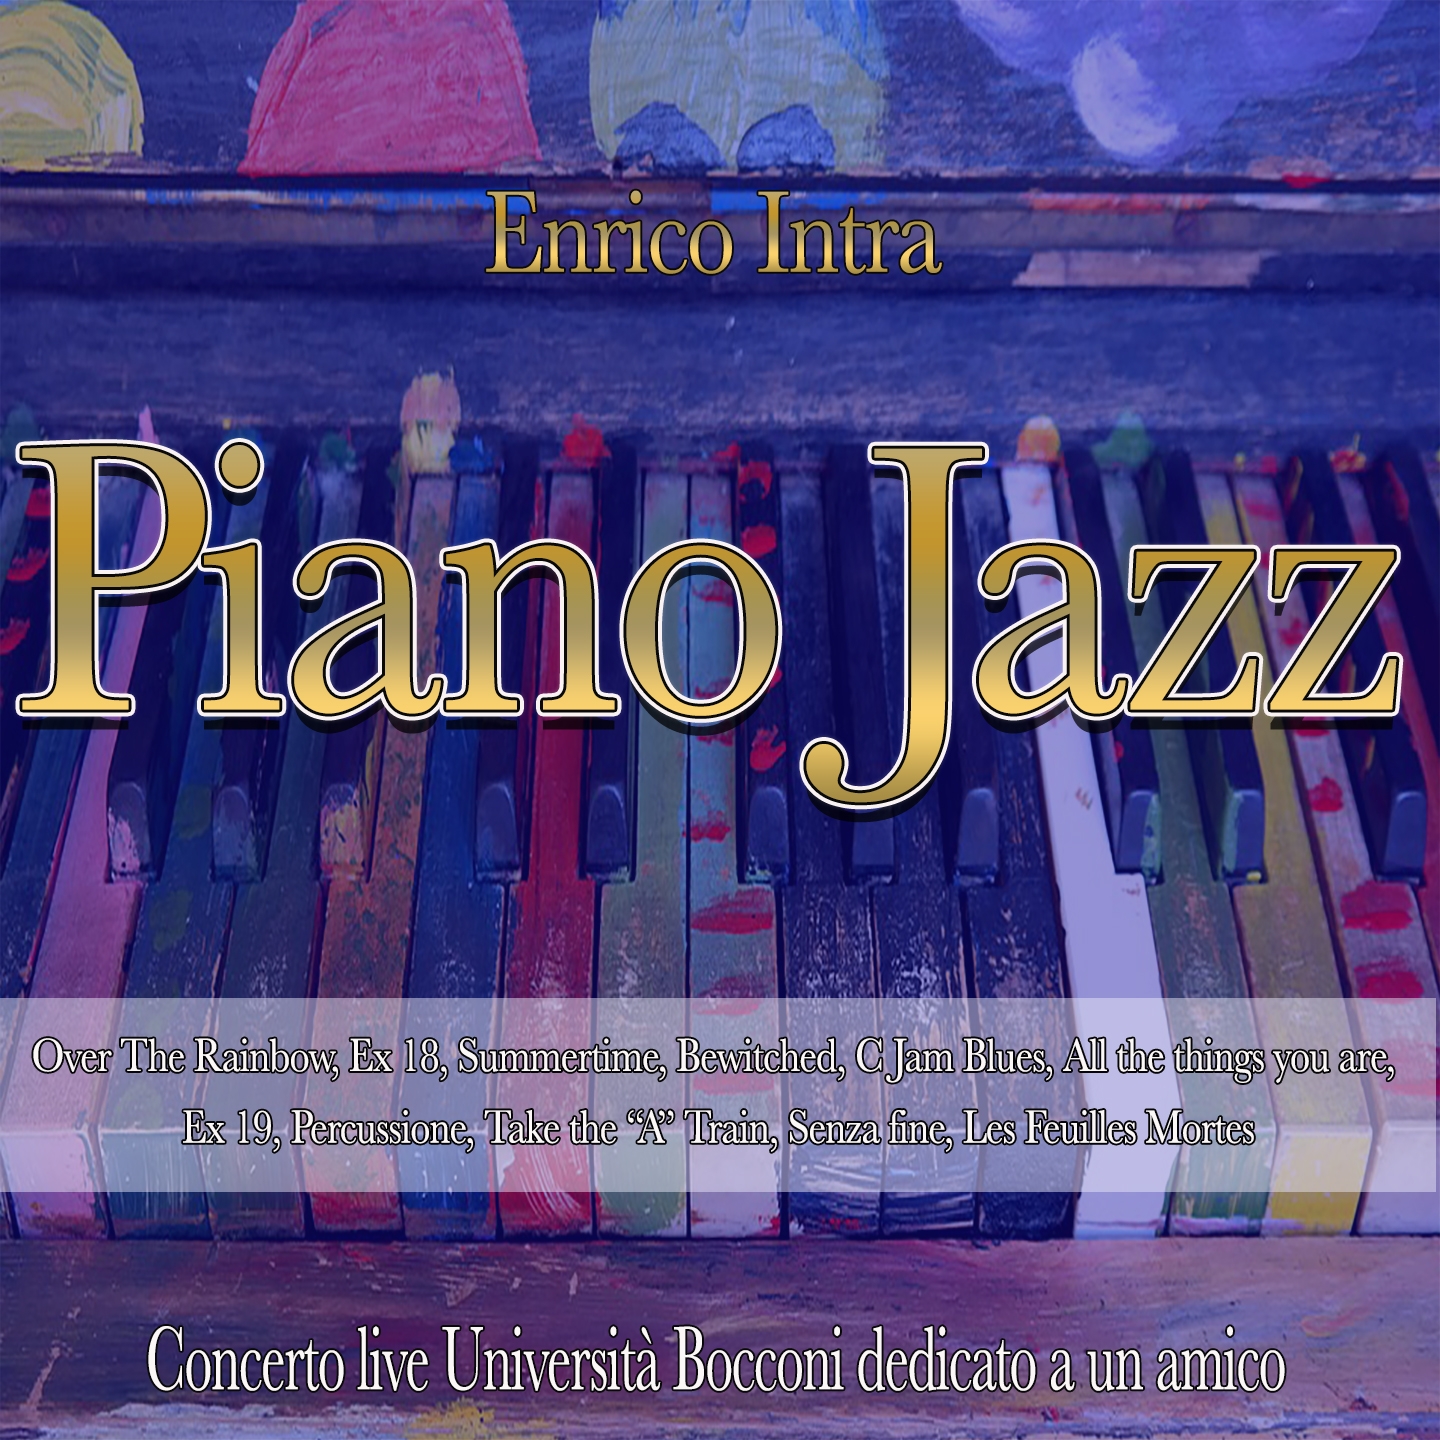 Piano Jazz